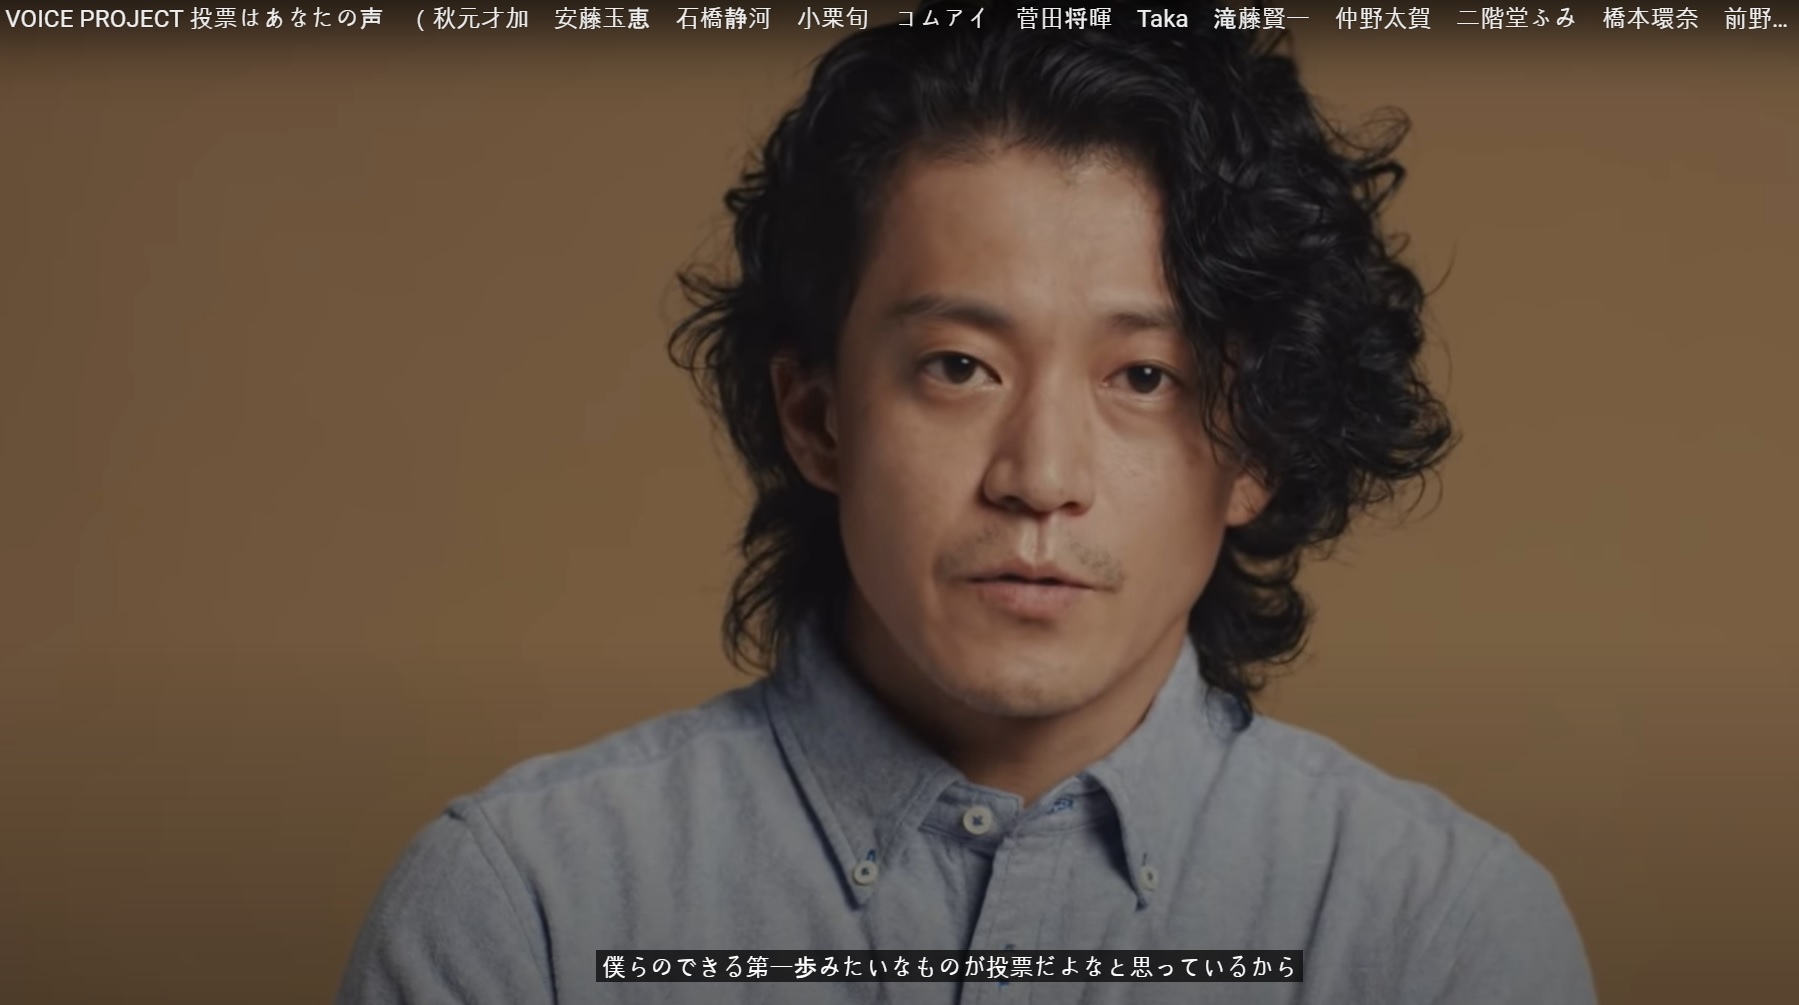 일본 배우 오구리 슌. ‘보이스프로젝트 투표는 당신의 목소리’ 캡처